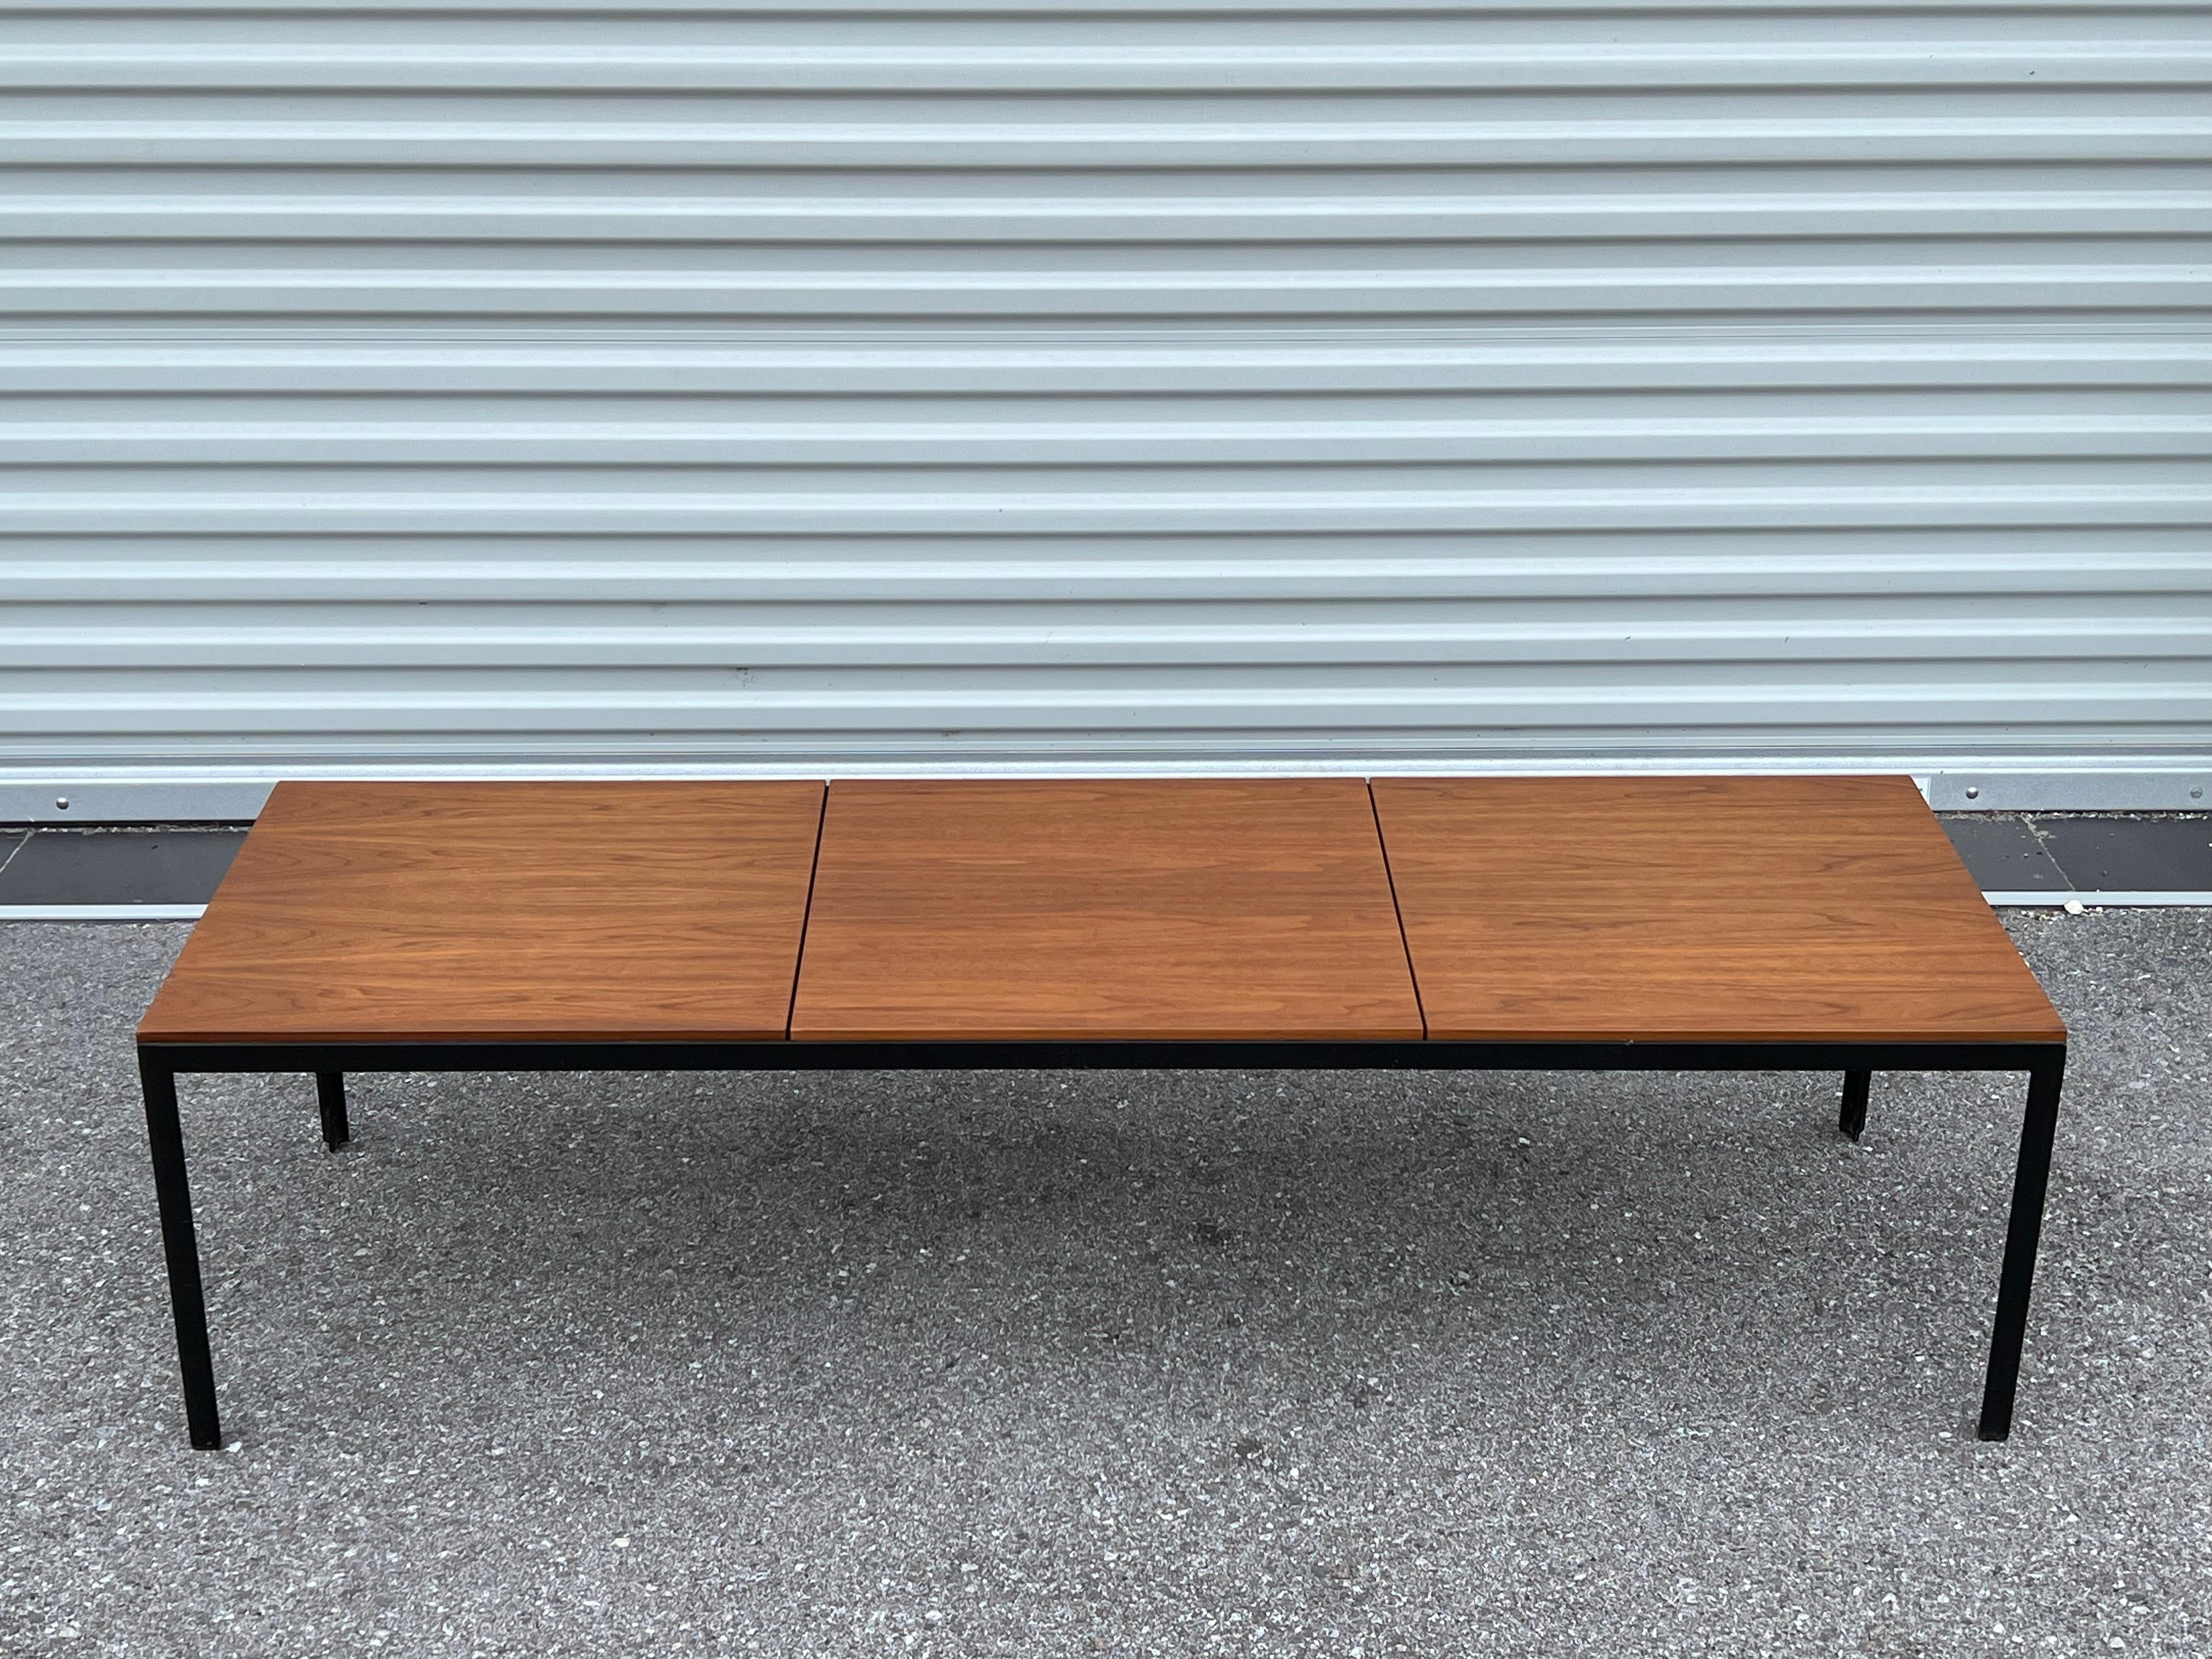 Un banc ou une table basse classique de Florence Knoll. Fabriqué par Knoll vers les années 1960.  Magnifique  placage de noyer, qualité des premières productions Knoll. Très pratique et intemporel, le design minimaliste. Cadres en fer T à angles